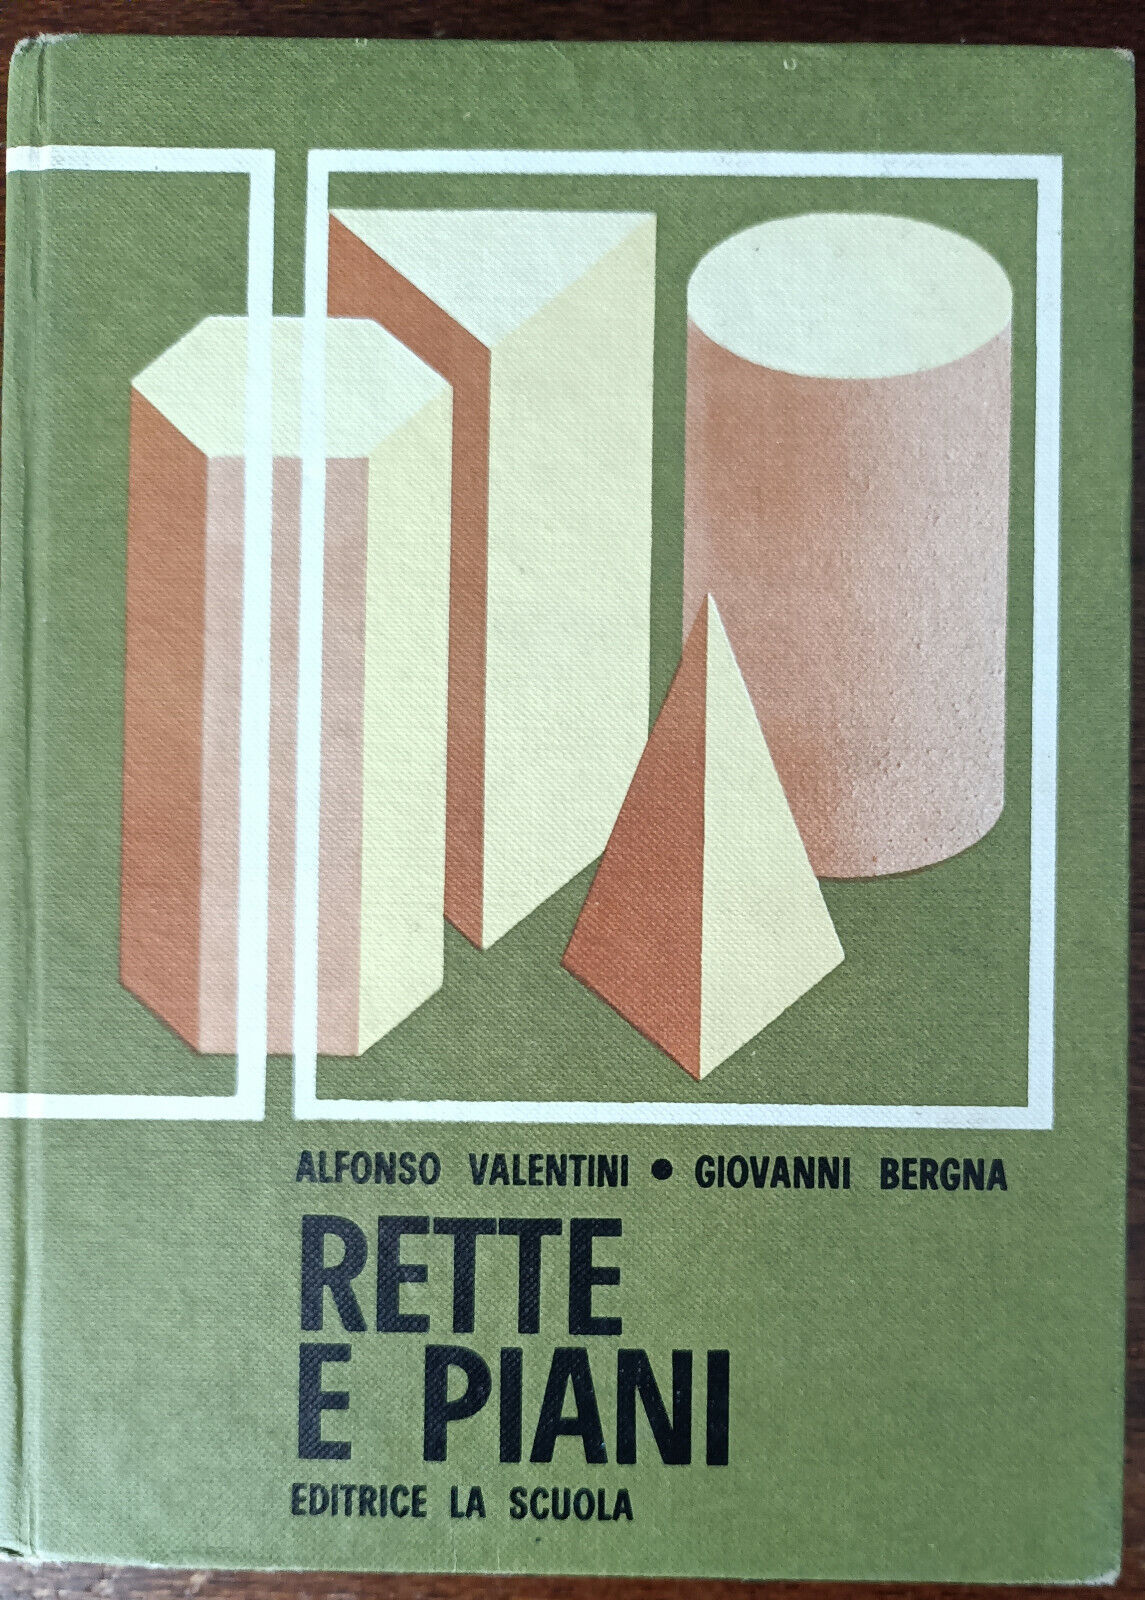 Rette e piani - Alfonso Valentini, Giovanni Bergna - La scuola, 1969 - A